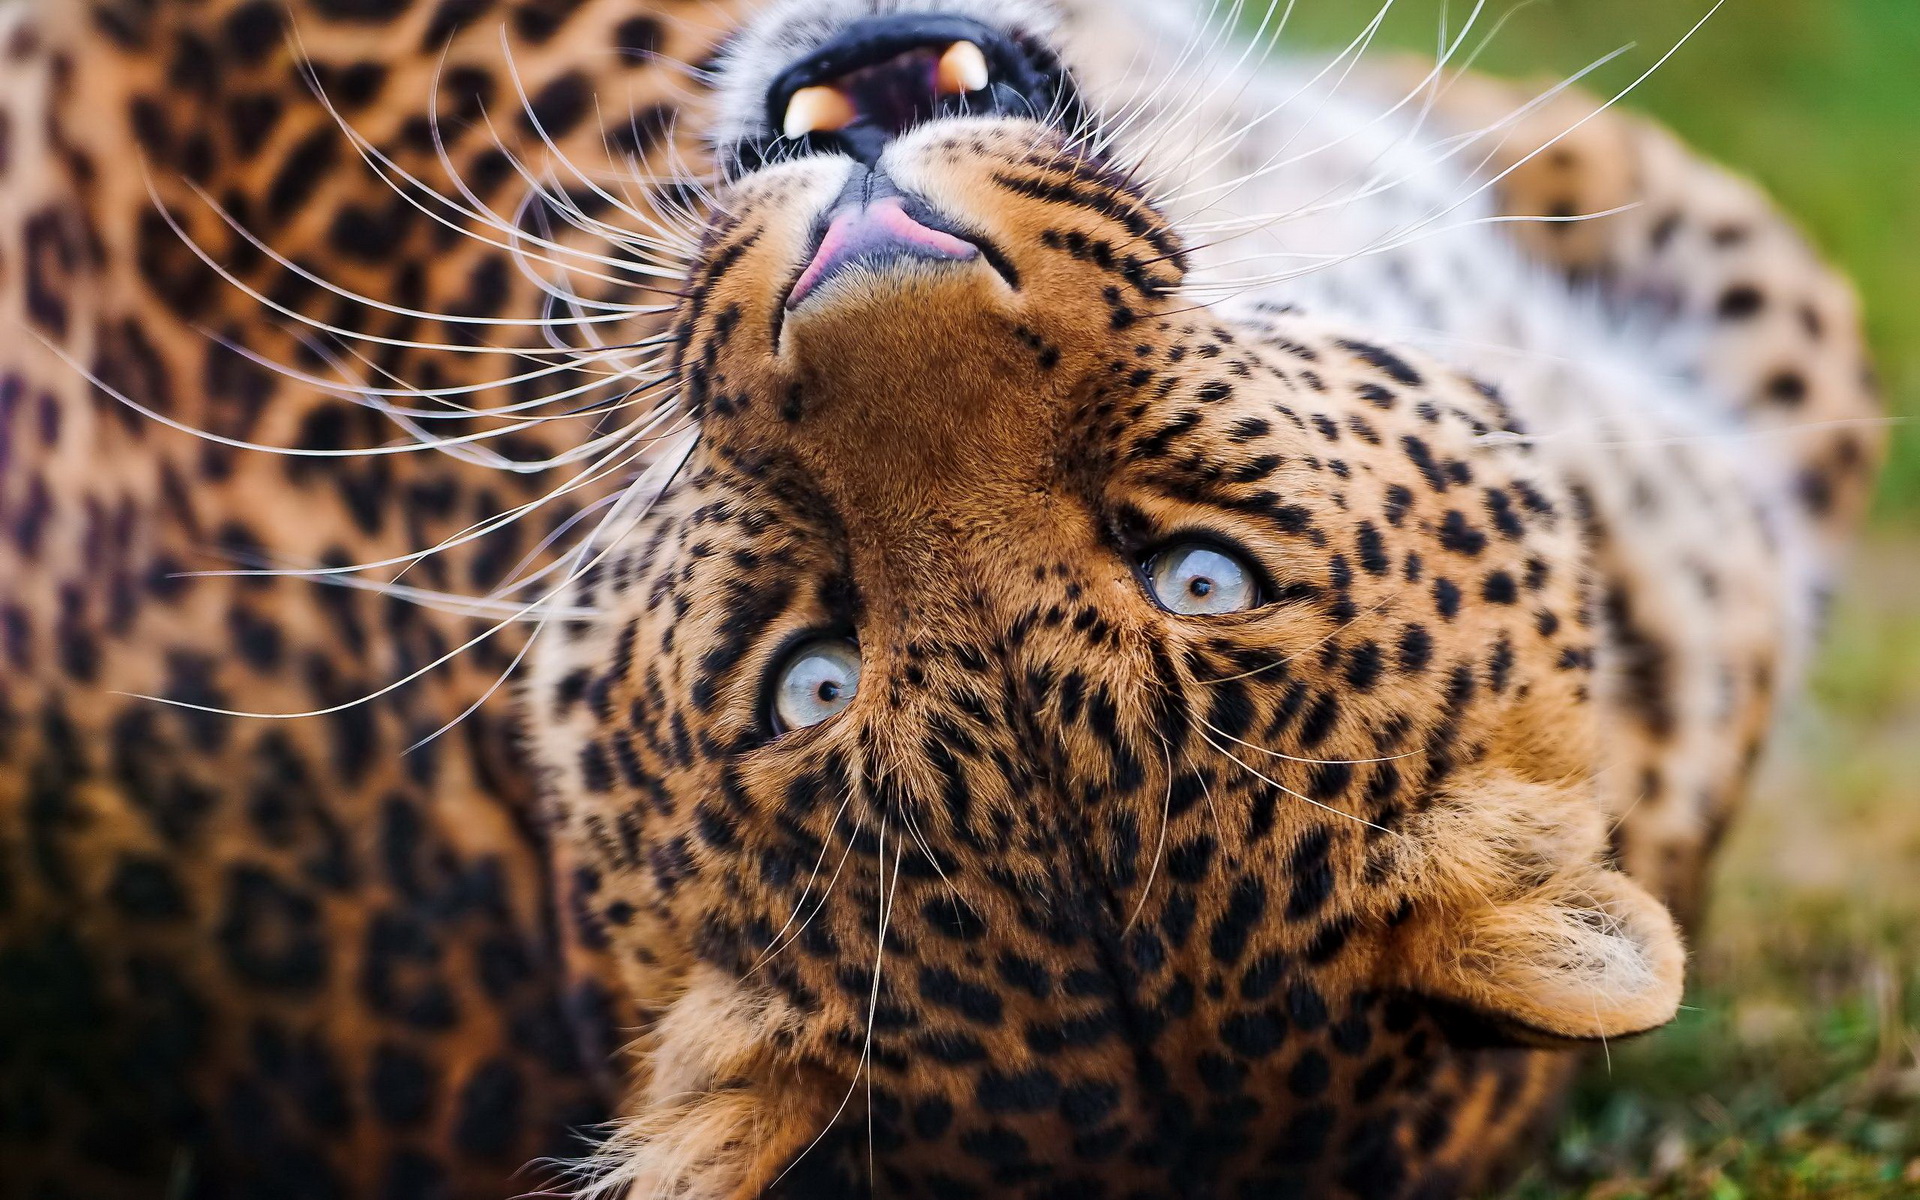 Скачать обои бесплатно Животные, Леопард картинка на рабочий стол ПК